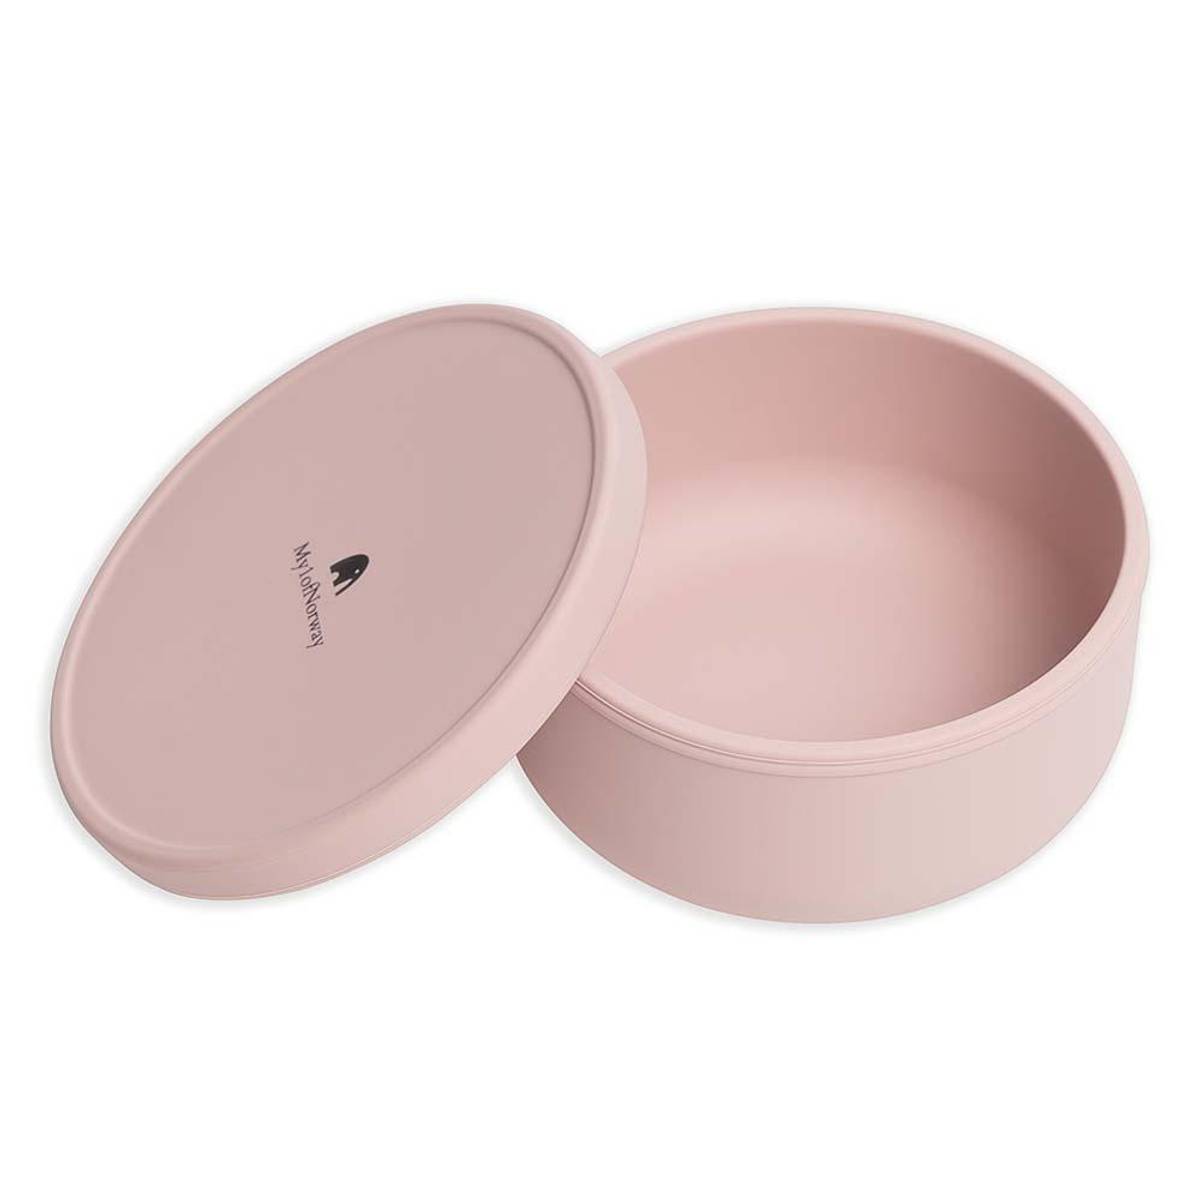 Oppbevaringsbeger i silikon - Powder Pink